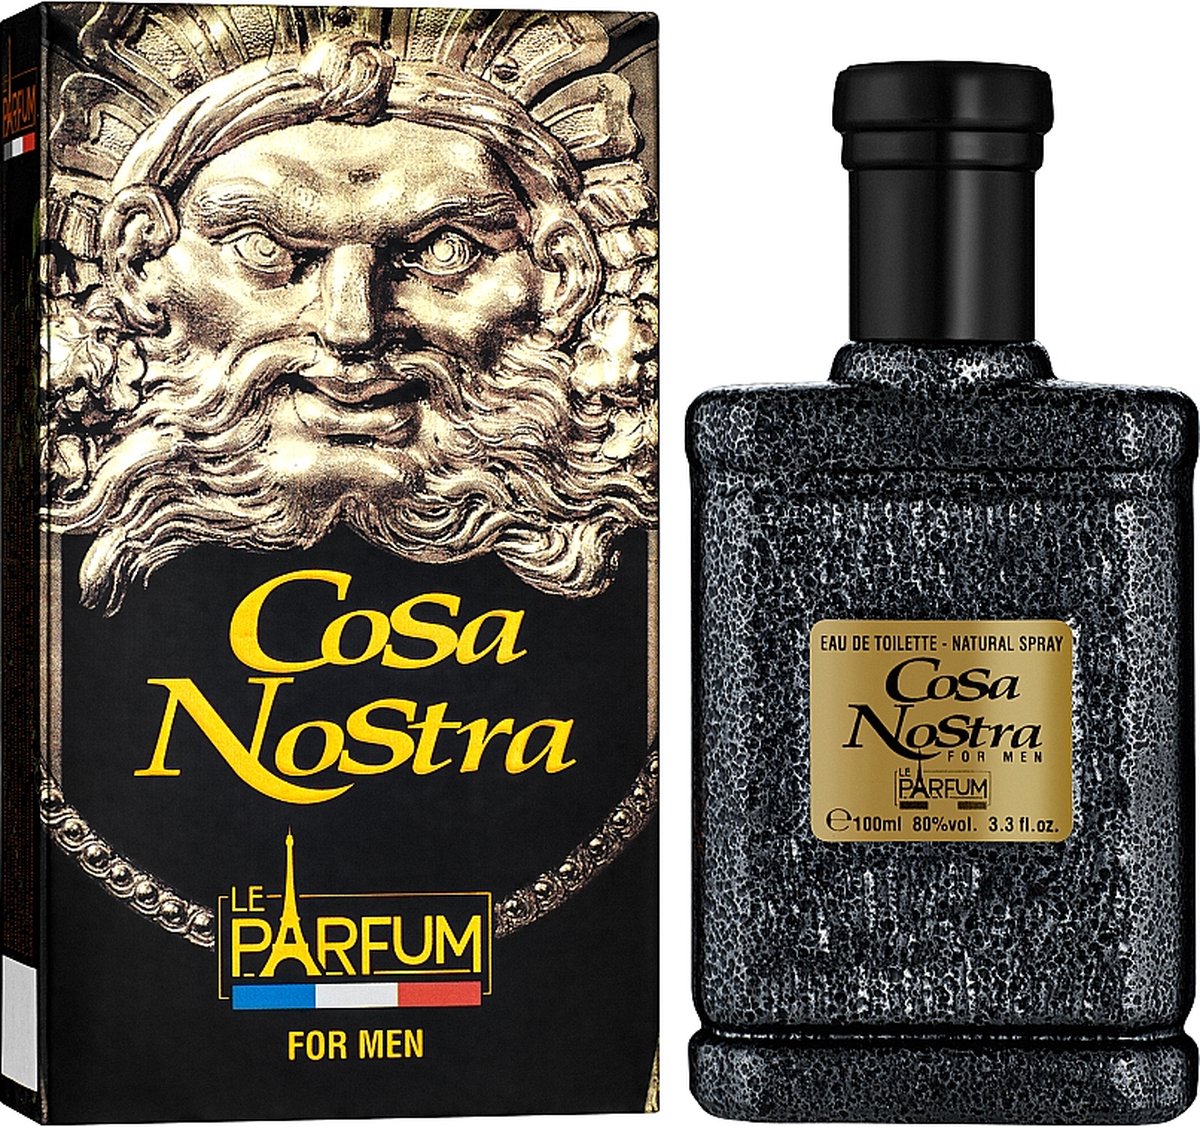 Cosa Nostra een kruidige geur met Nootmuskaat en Amber.